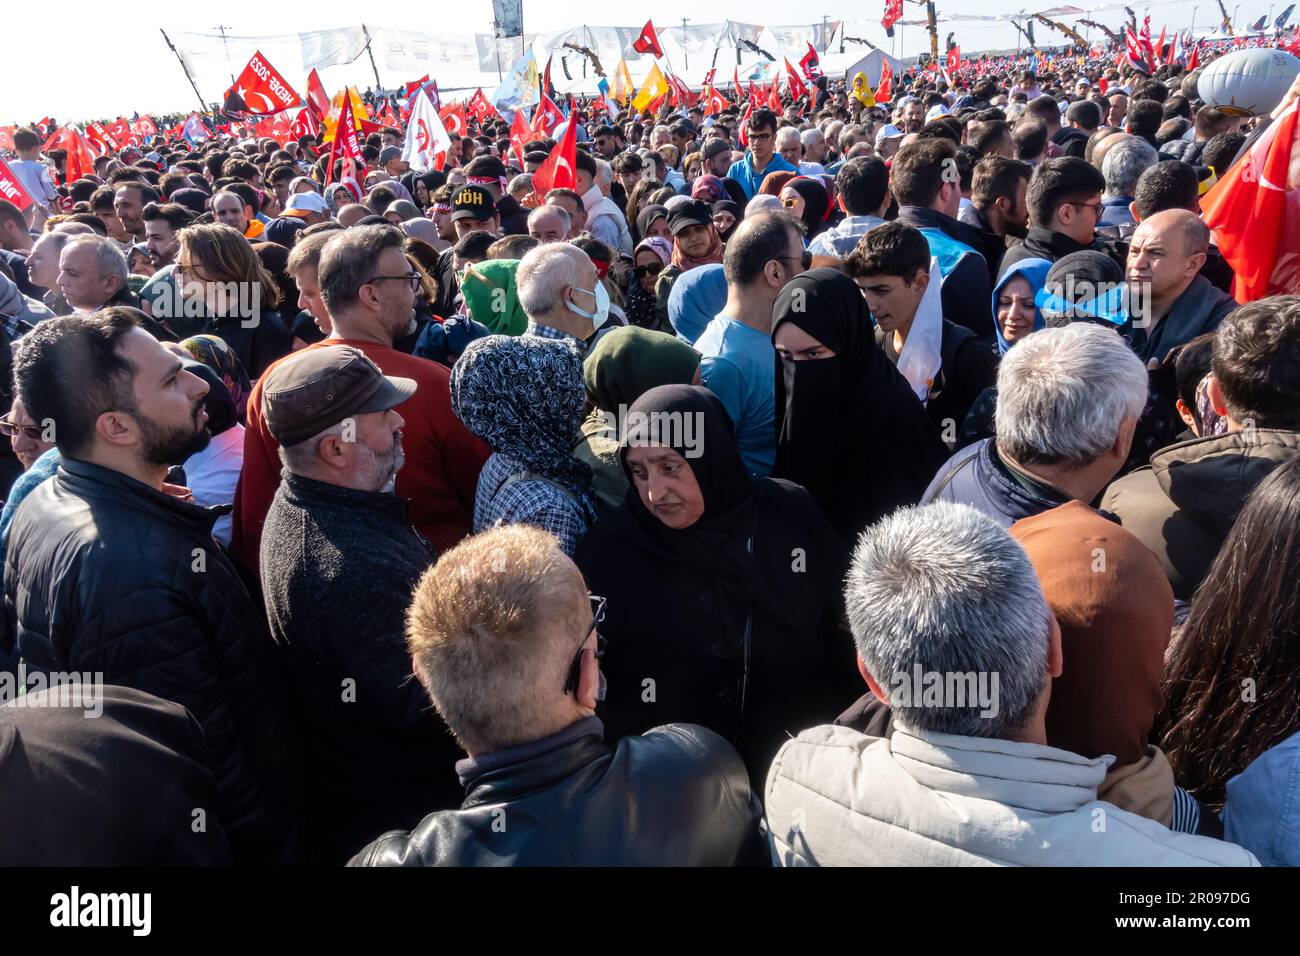 Élections en Turquie. Rassemblement Erdogan à Istanbul. La foule s'est rassemblée pour soutenir la campagne électorale du président Erdogan avant les élections présidentielles turques Banque D'Images